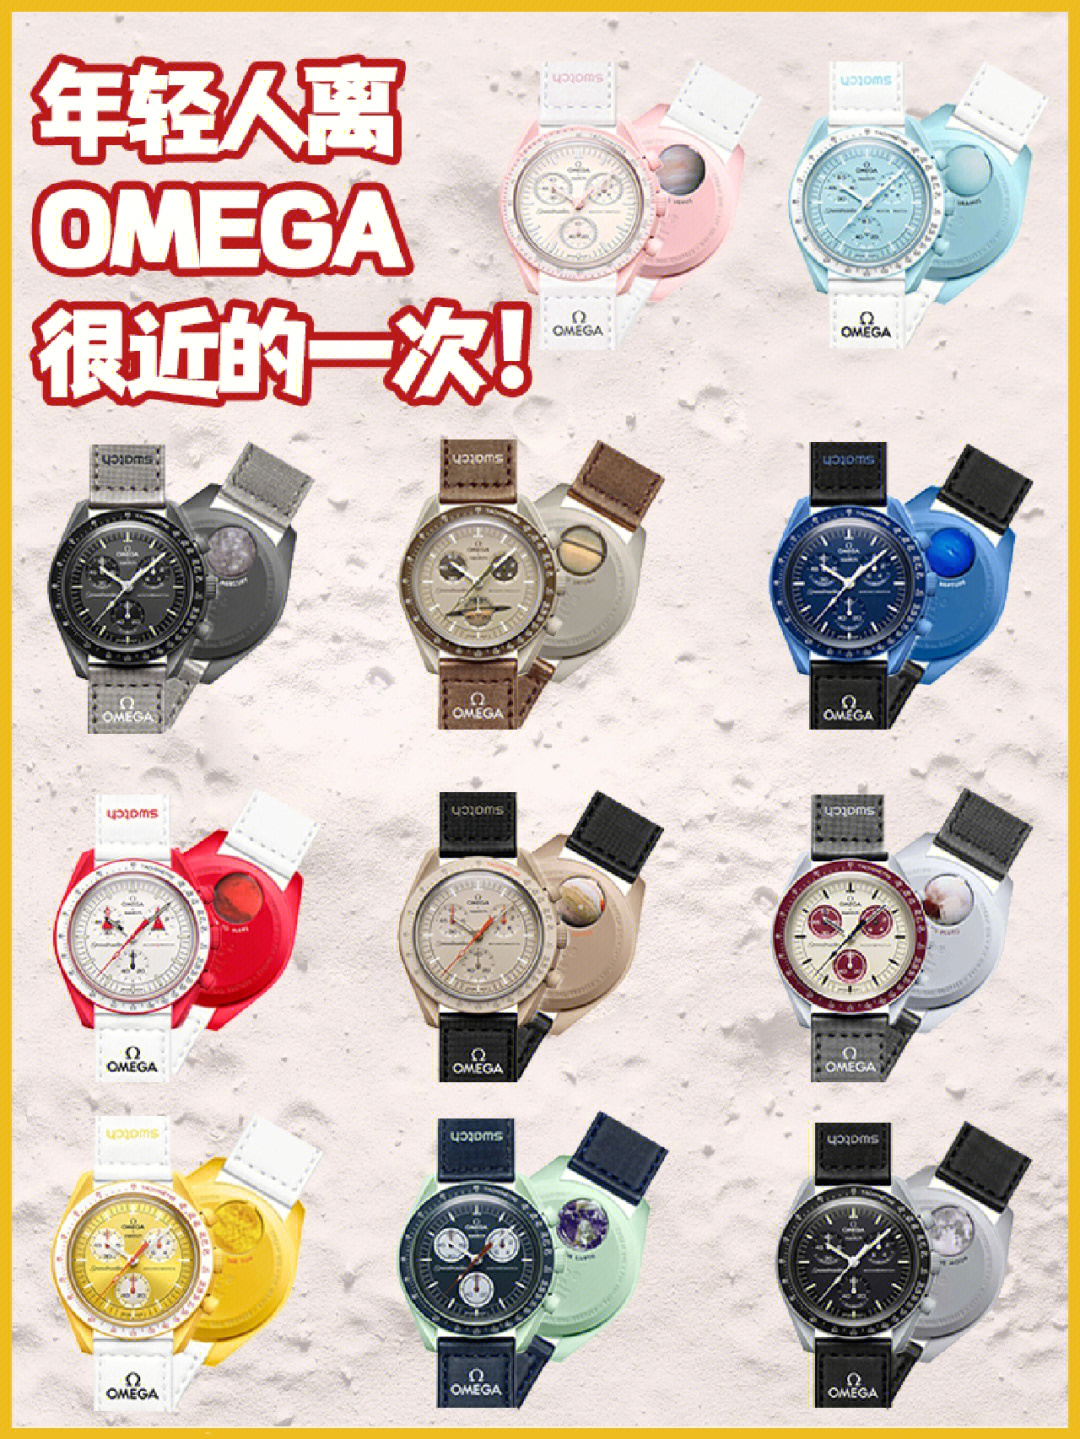 omegaxswatch联名款发售年轻人都能买